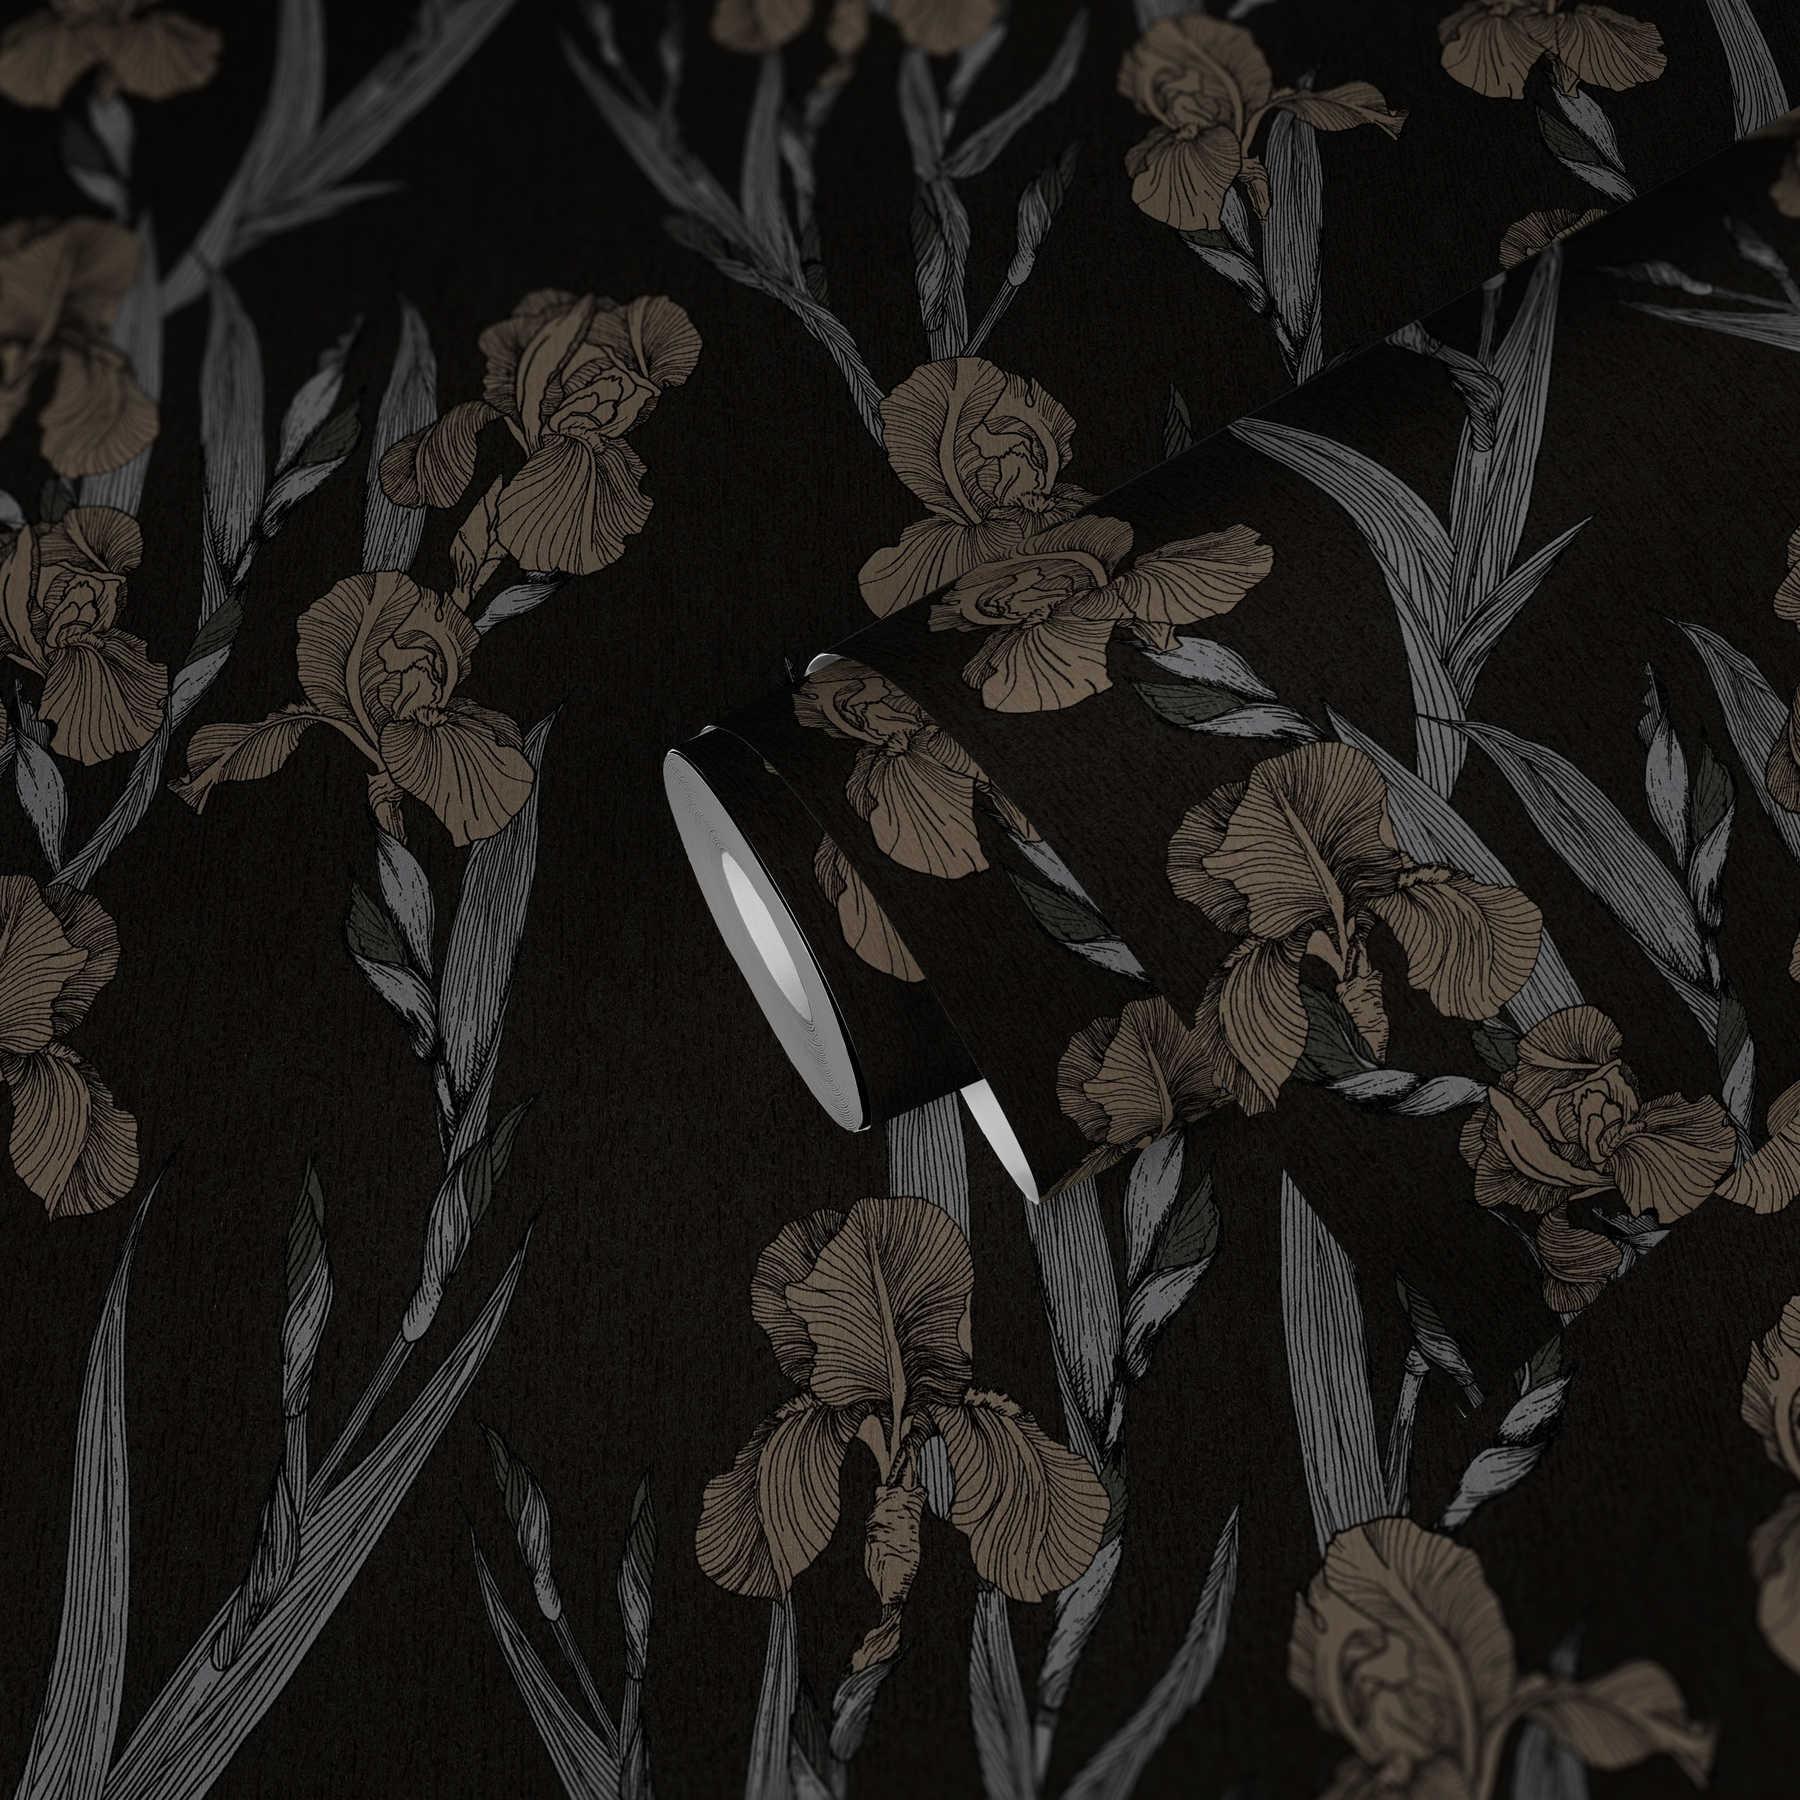             Papel pintado con motivos florales en estilo de dibujo - negro, gris, marrón
        